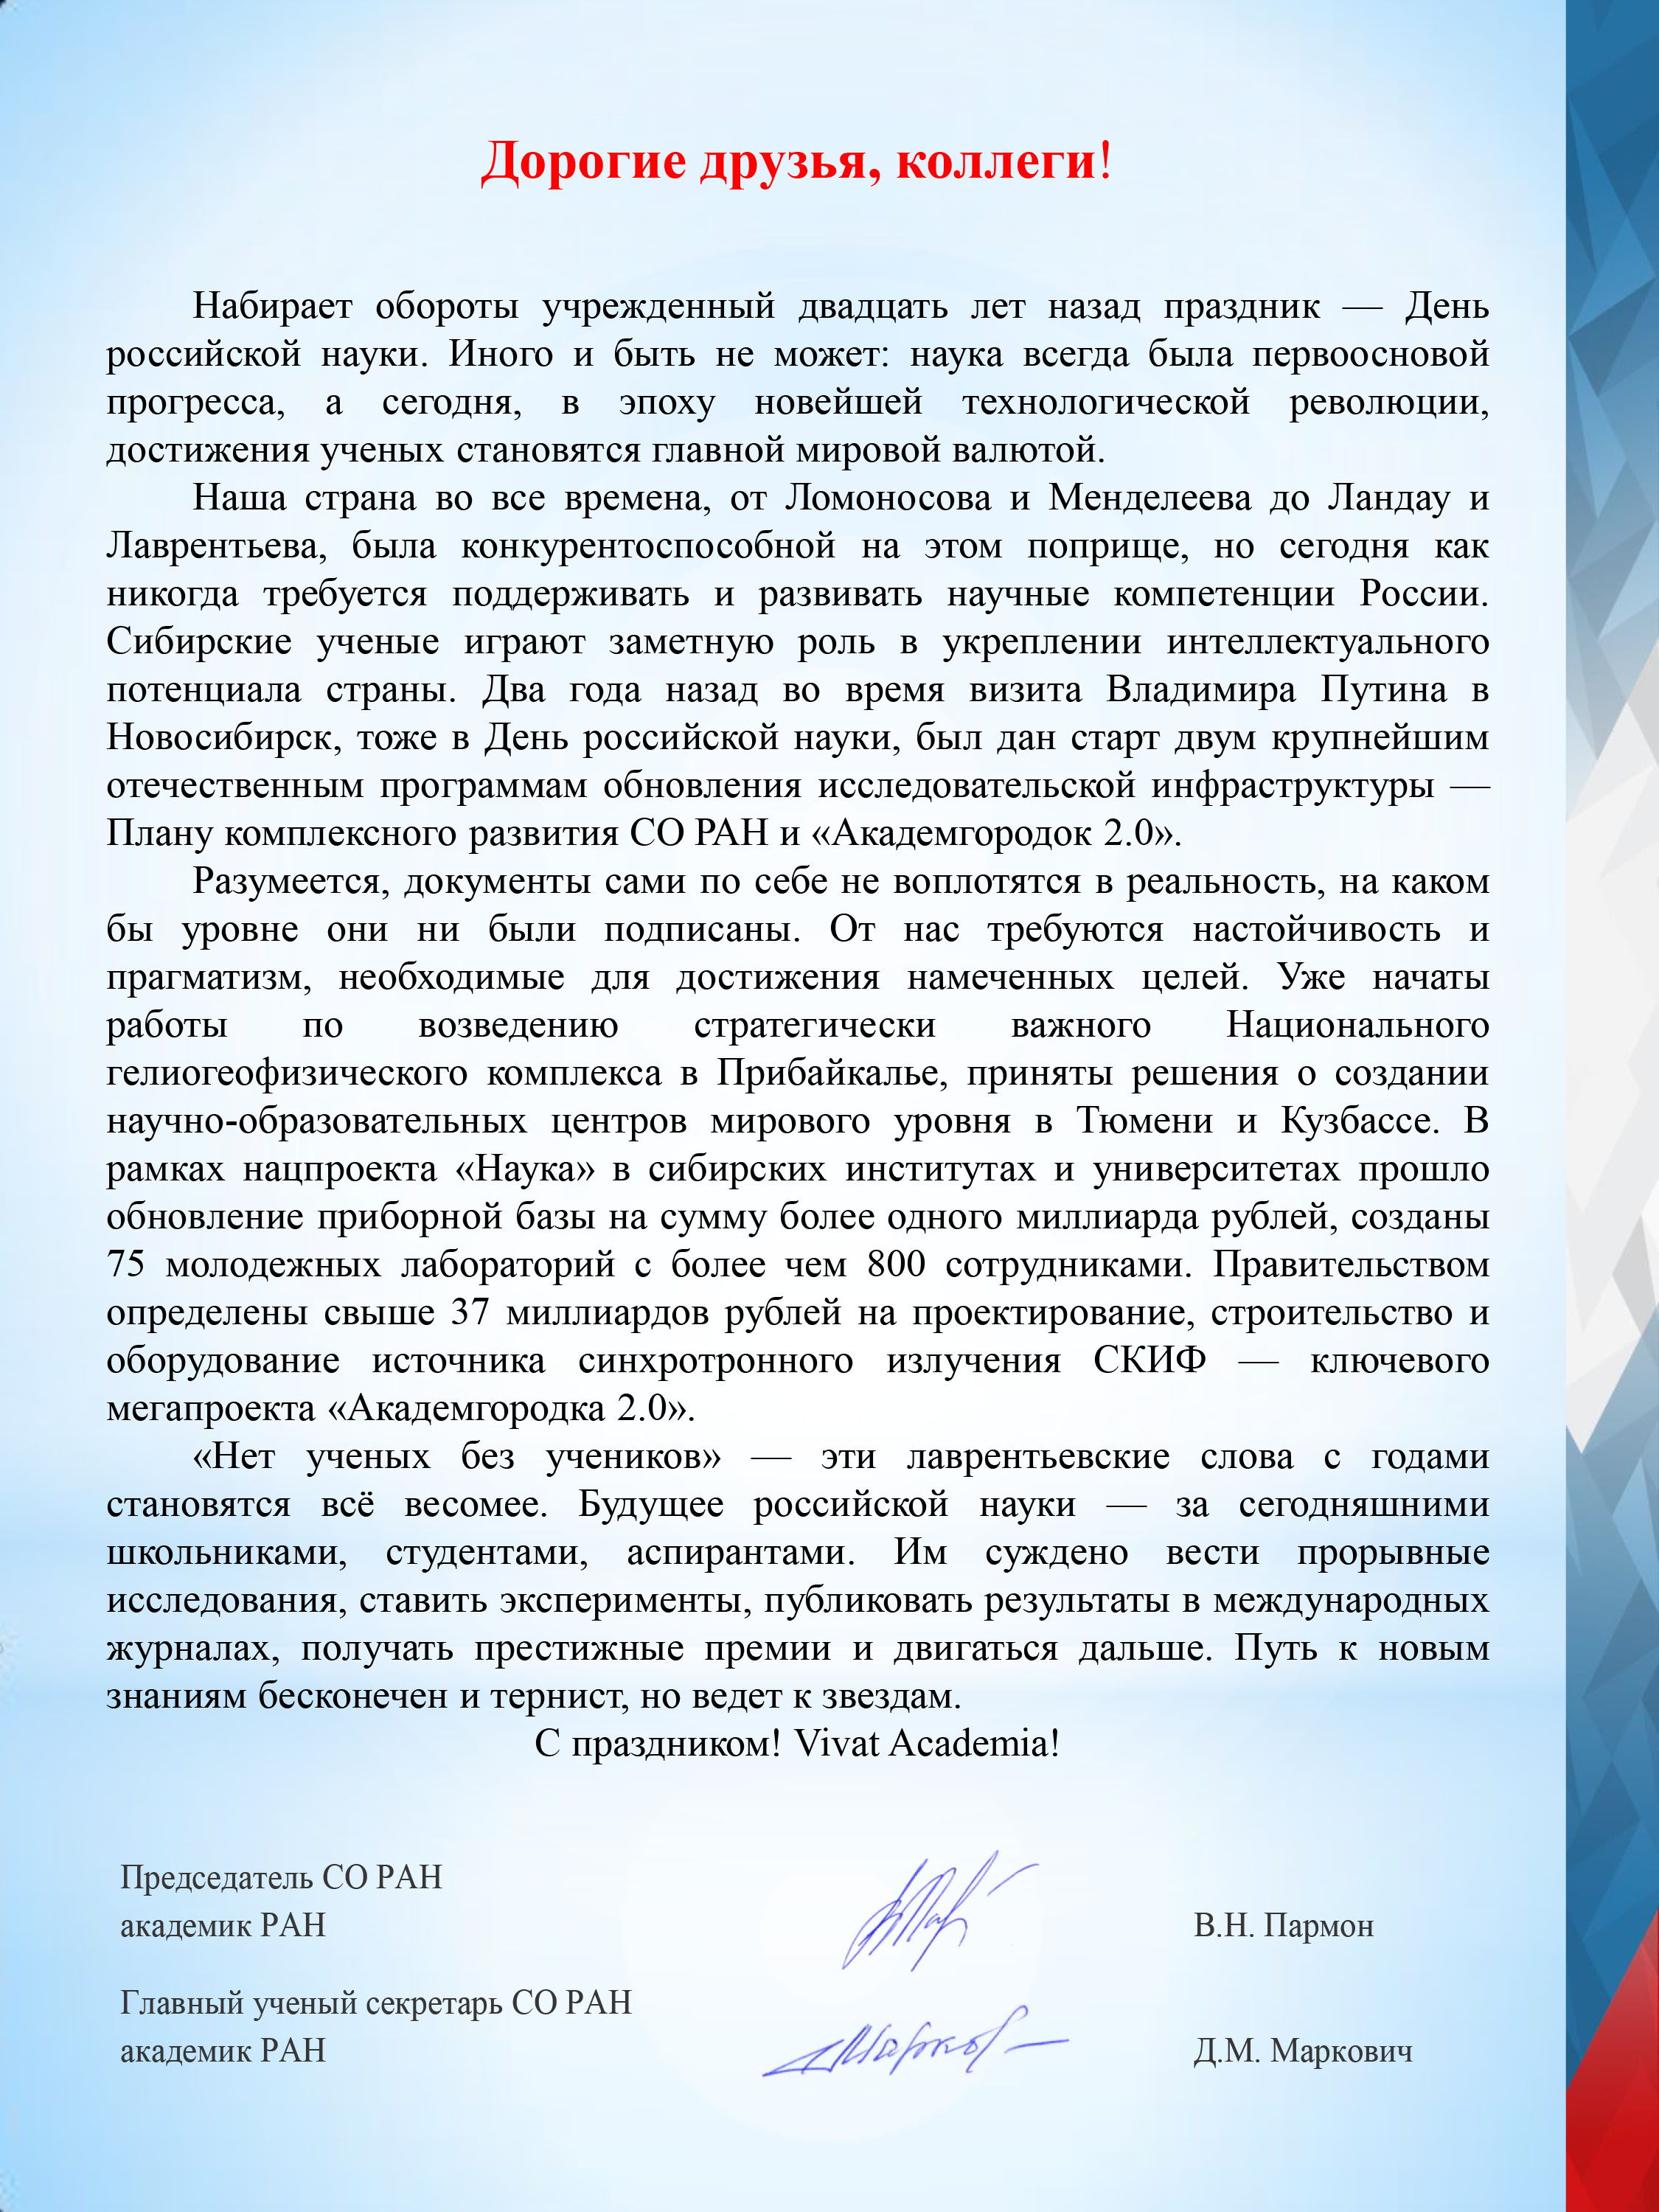 Поздравление с Днем российской науки от Президиума Сибирского отделения РАН